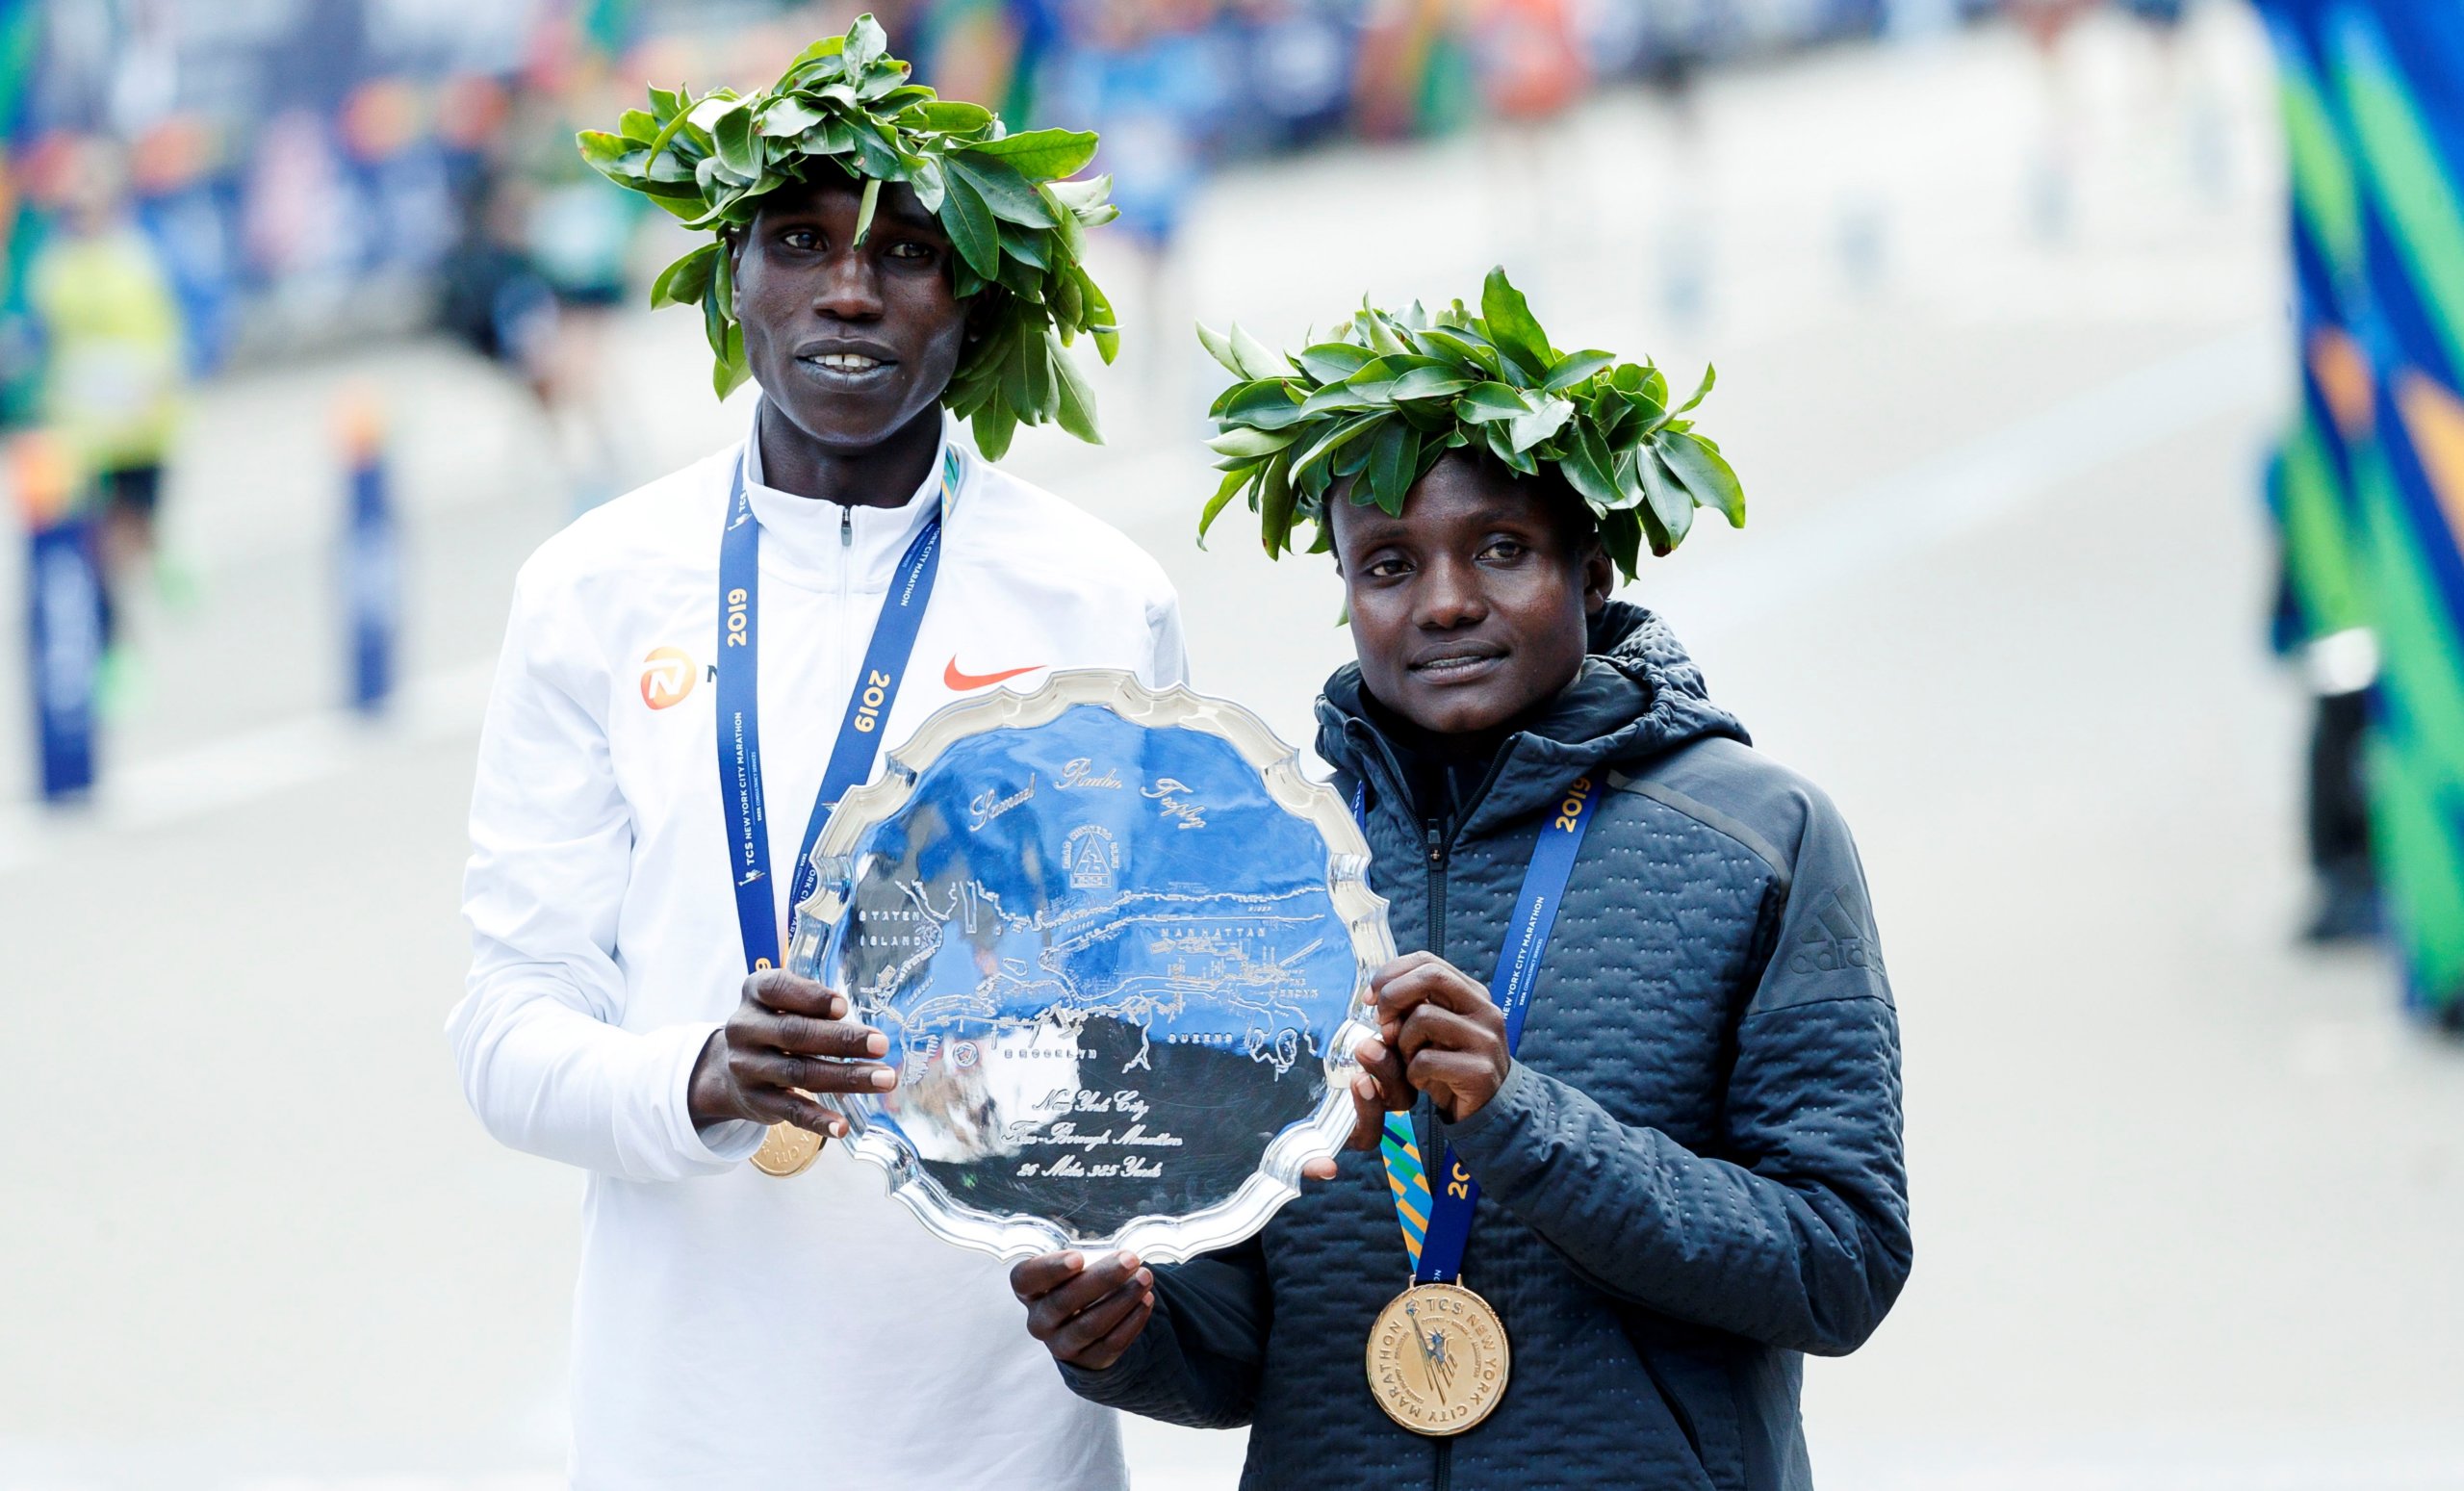 La Maratón de Nueva York 2019 conquistada por atletas kenianos (Videos)